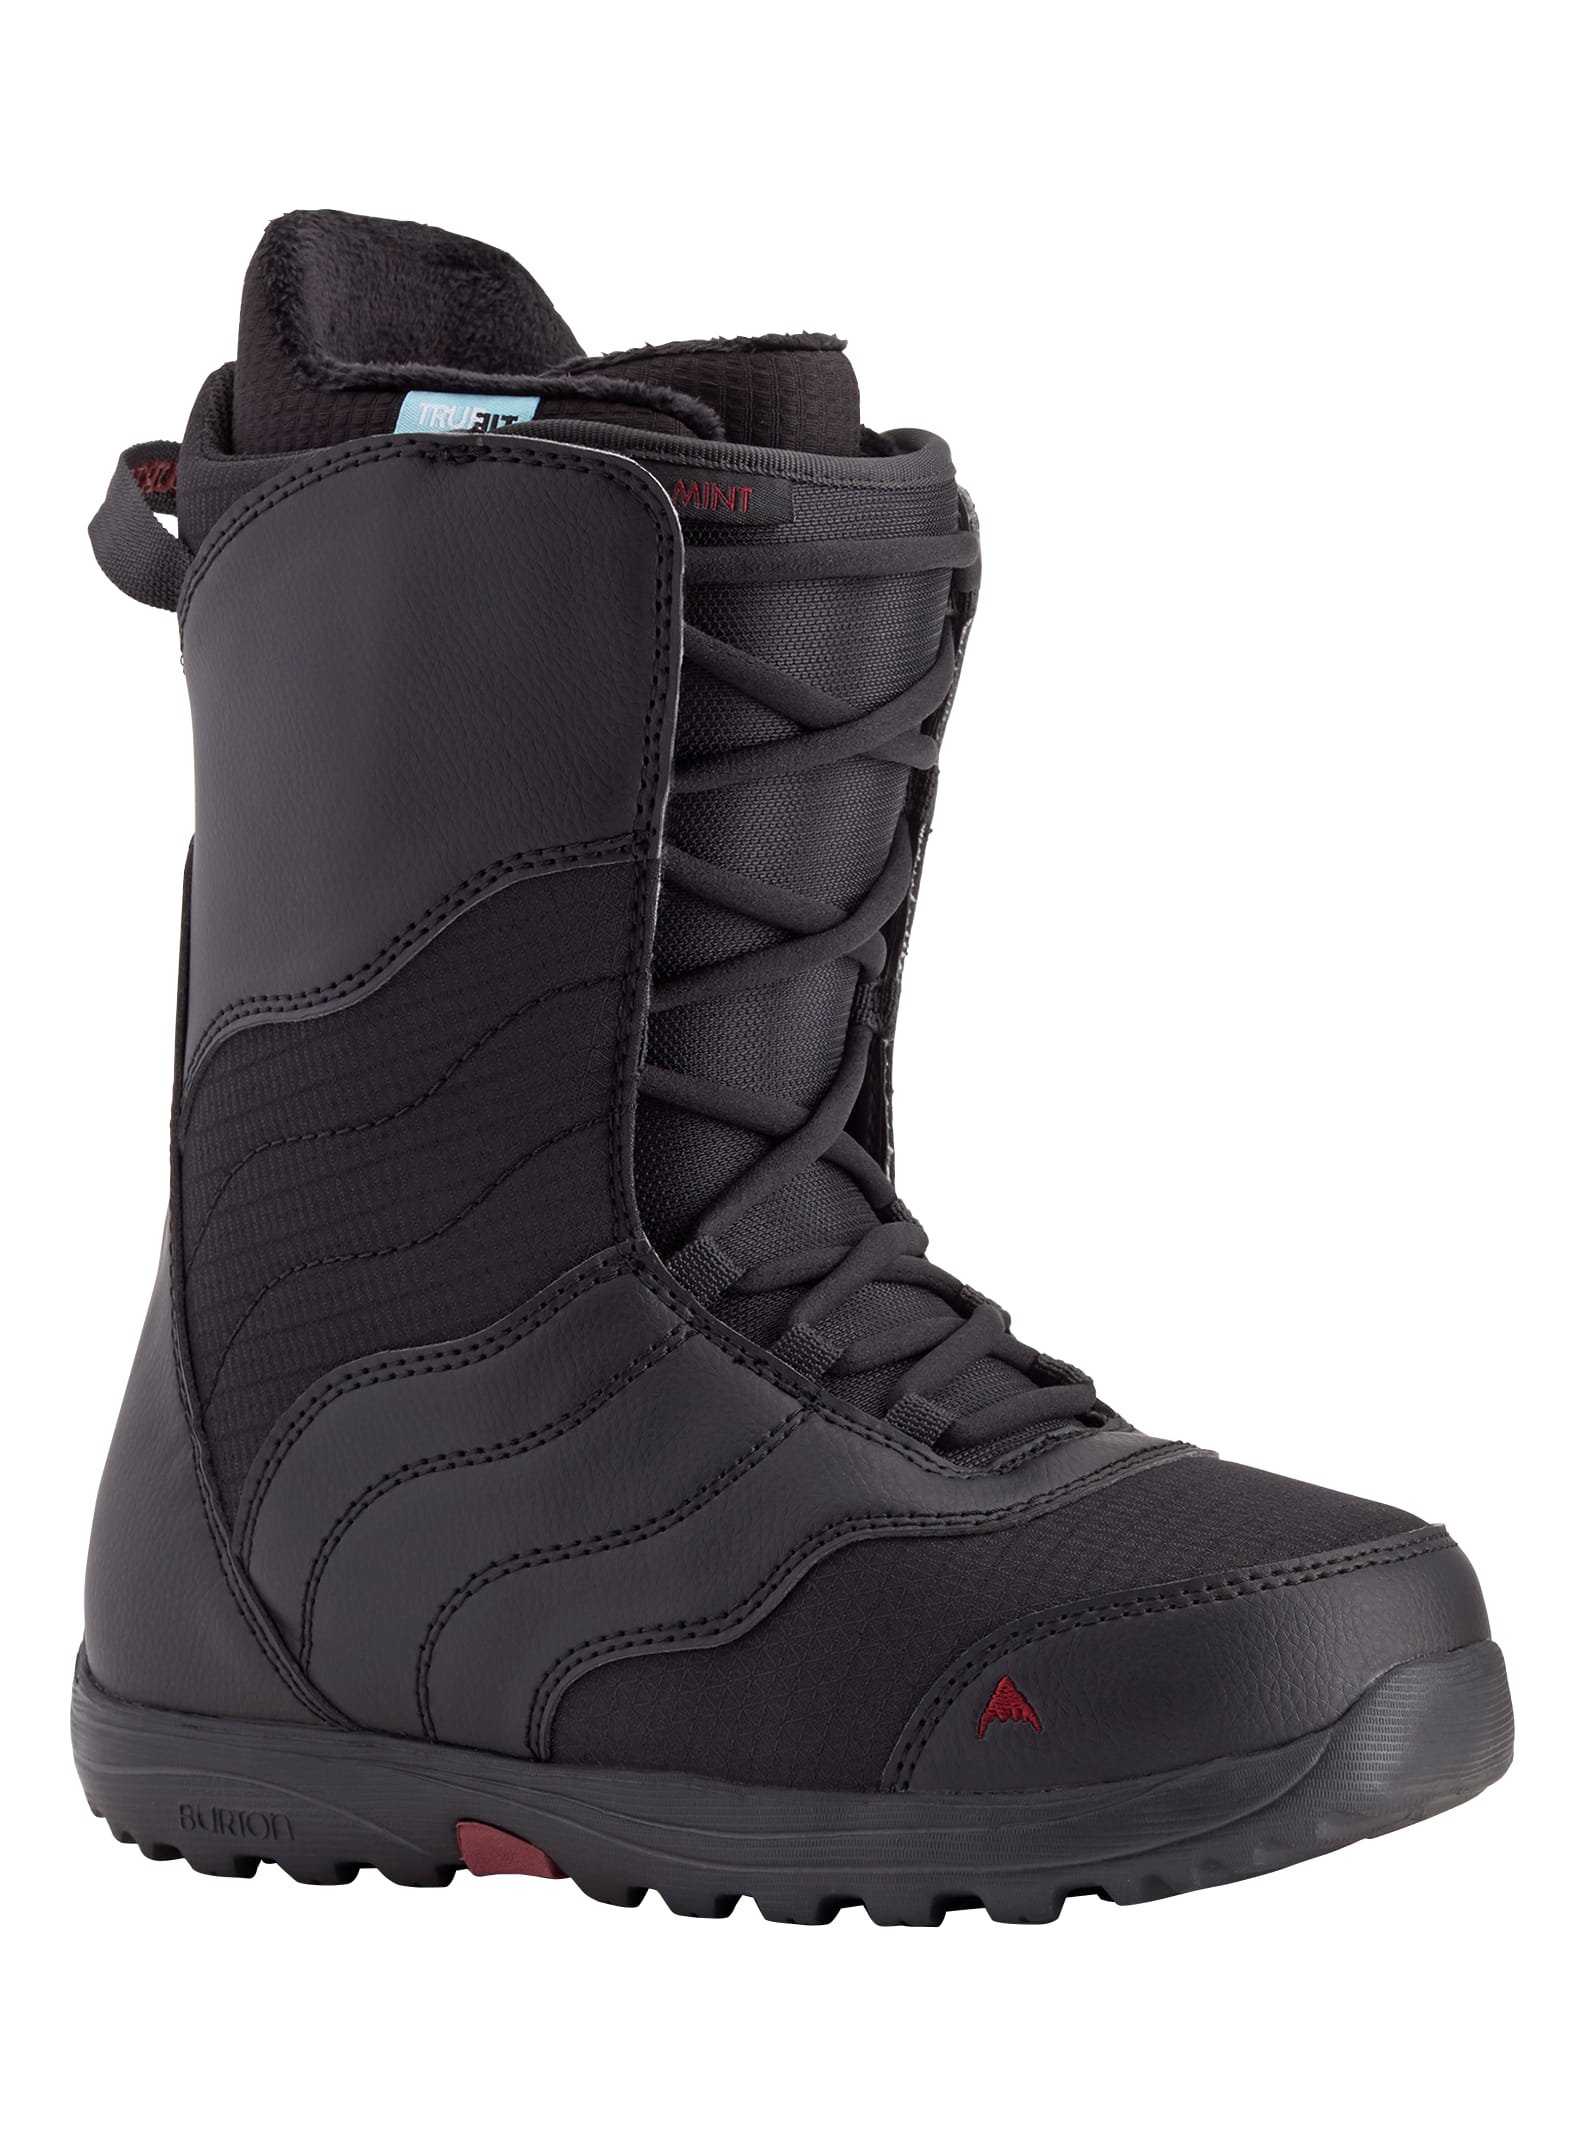 Burton - Boots de snowboard Mint Lace femme, Black, 10